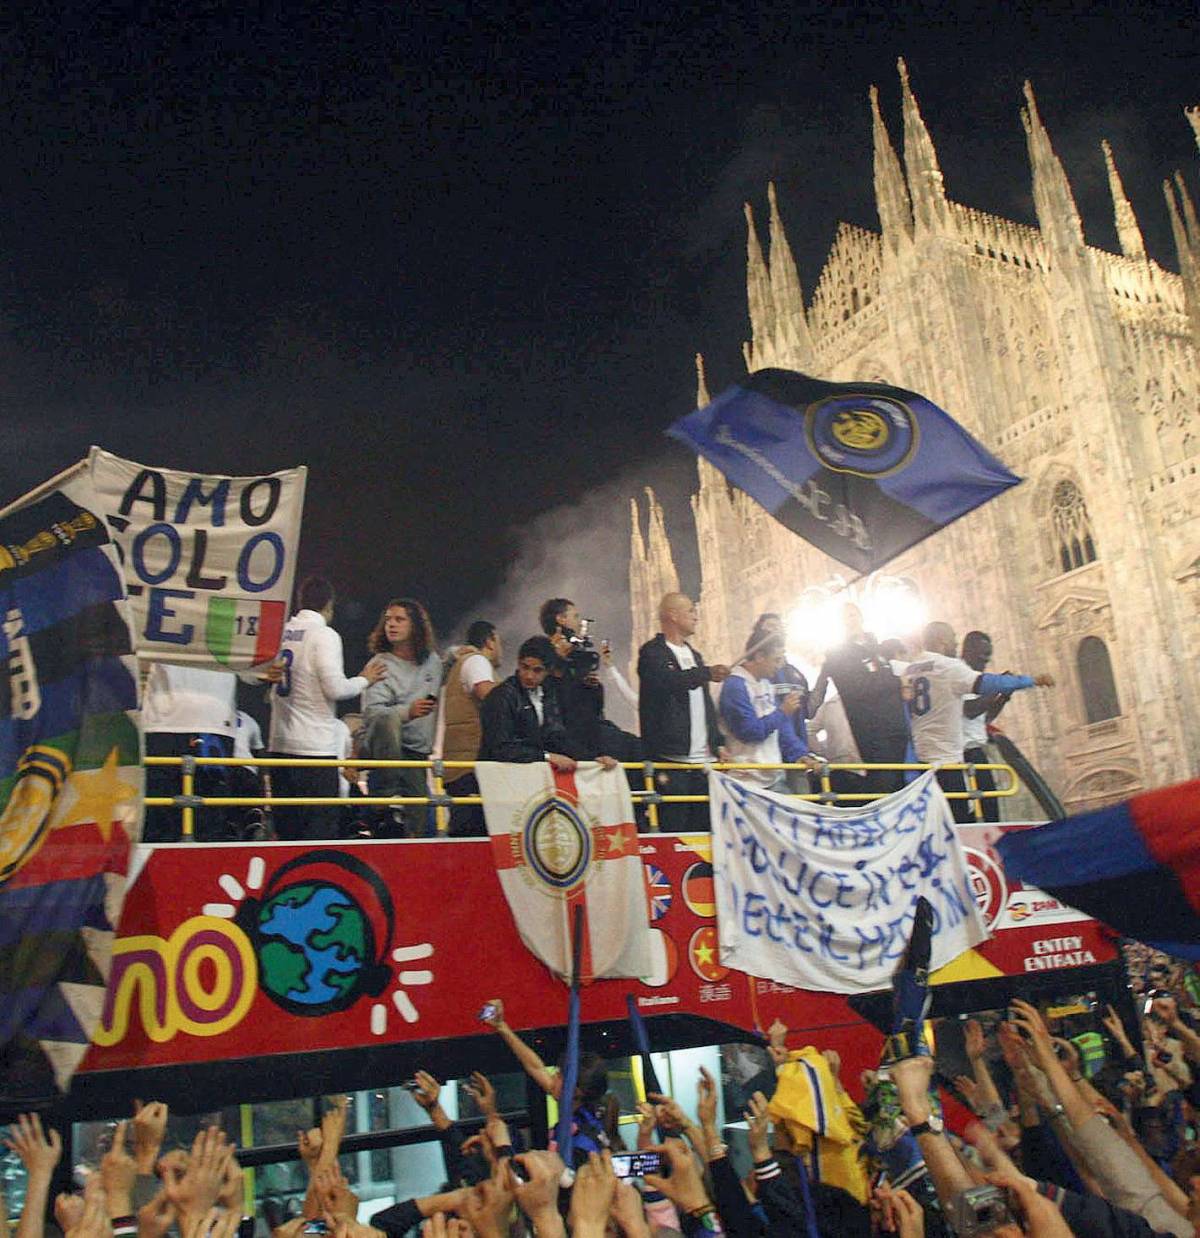 Nerazzurri in Duomo 
celebrano il trionfo 
Striscioni anti Totti